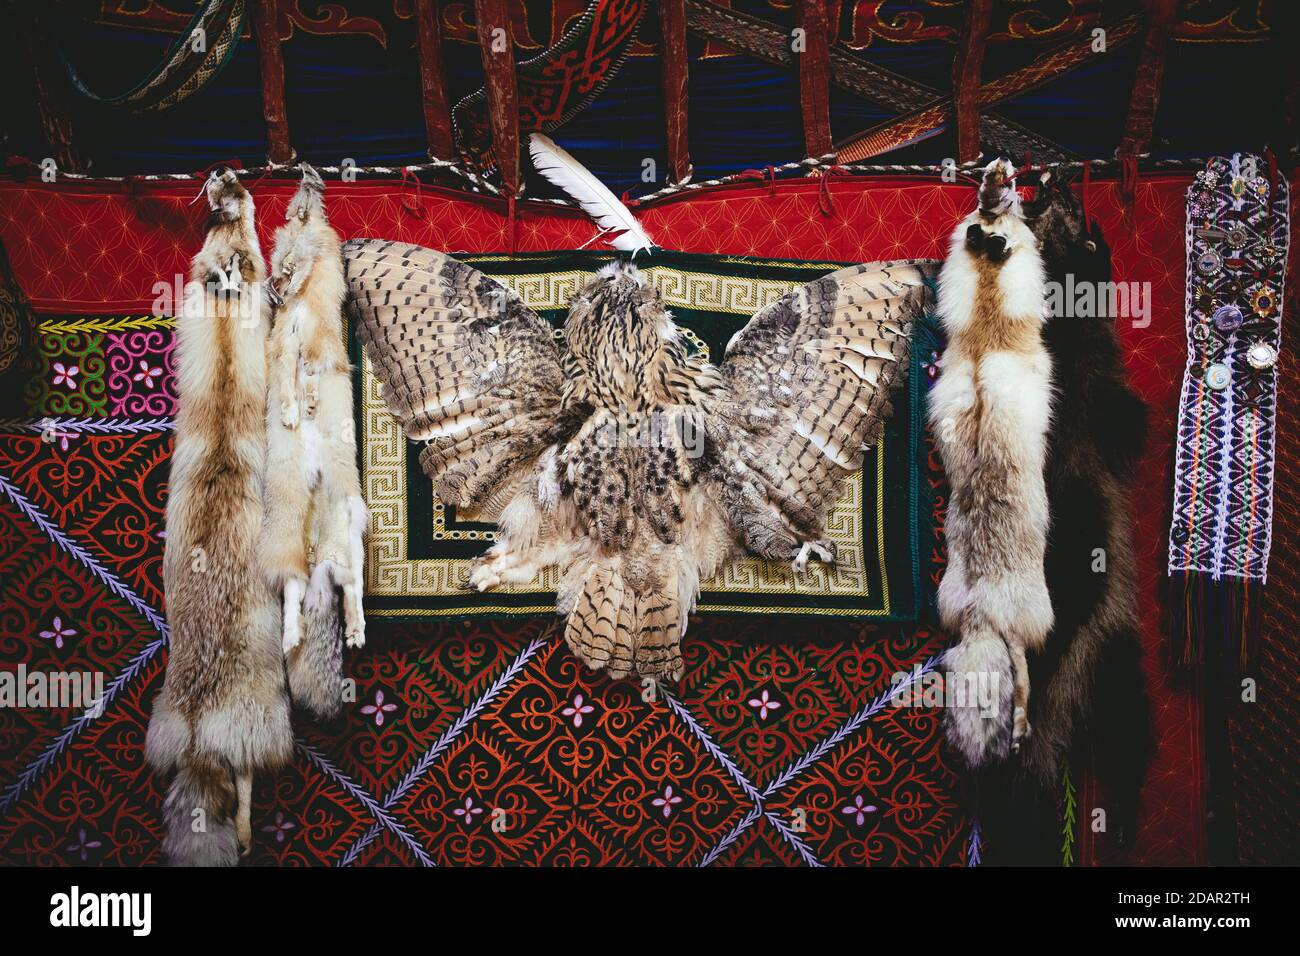 Trophées de l'aigle chasseur Bashakhan SPAI, renard, tanuki et hibou, les peaux de renard qu'il vend au bazar à Olgii, la chouette qu'il garde comme décoration Banque D'Images